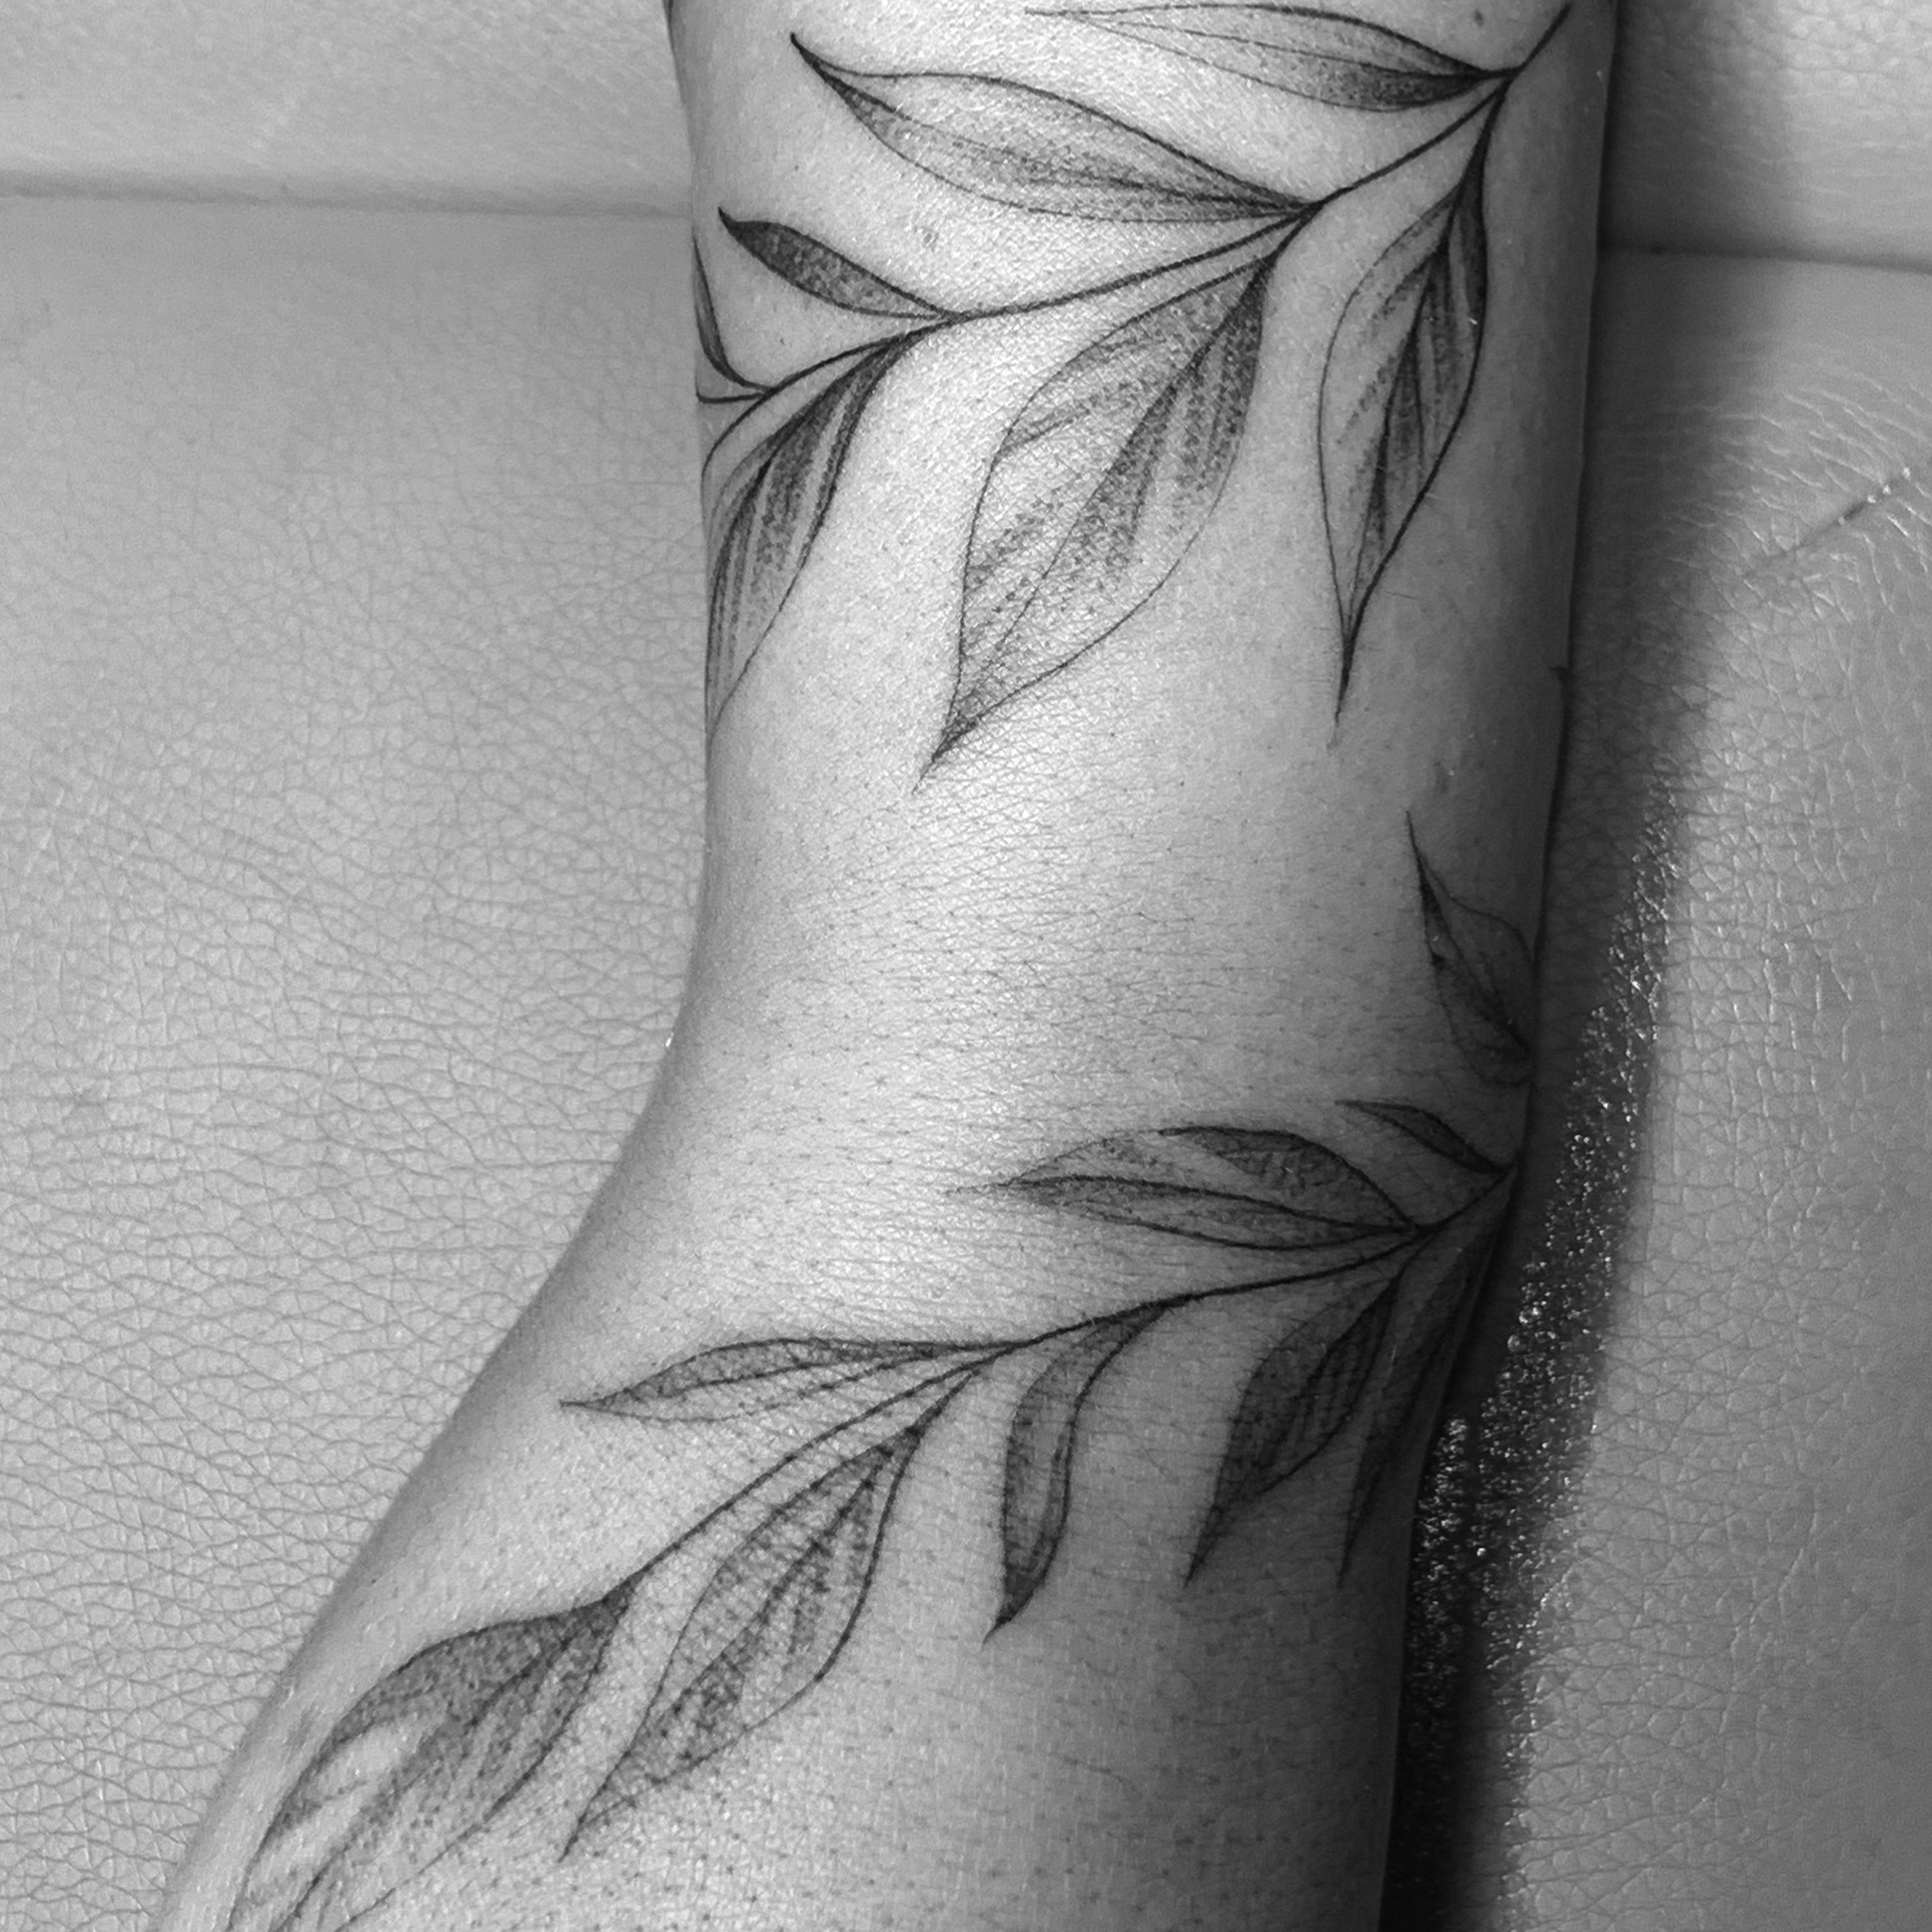 Pin on tattoo  piercing inspo  Tattoos Leg tattoos women Vine tattoos